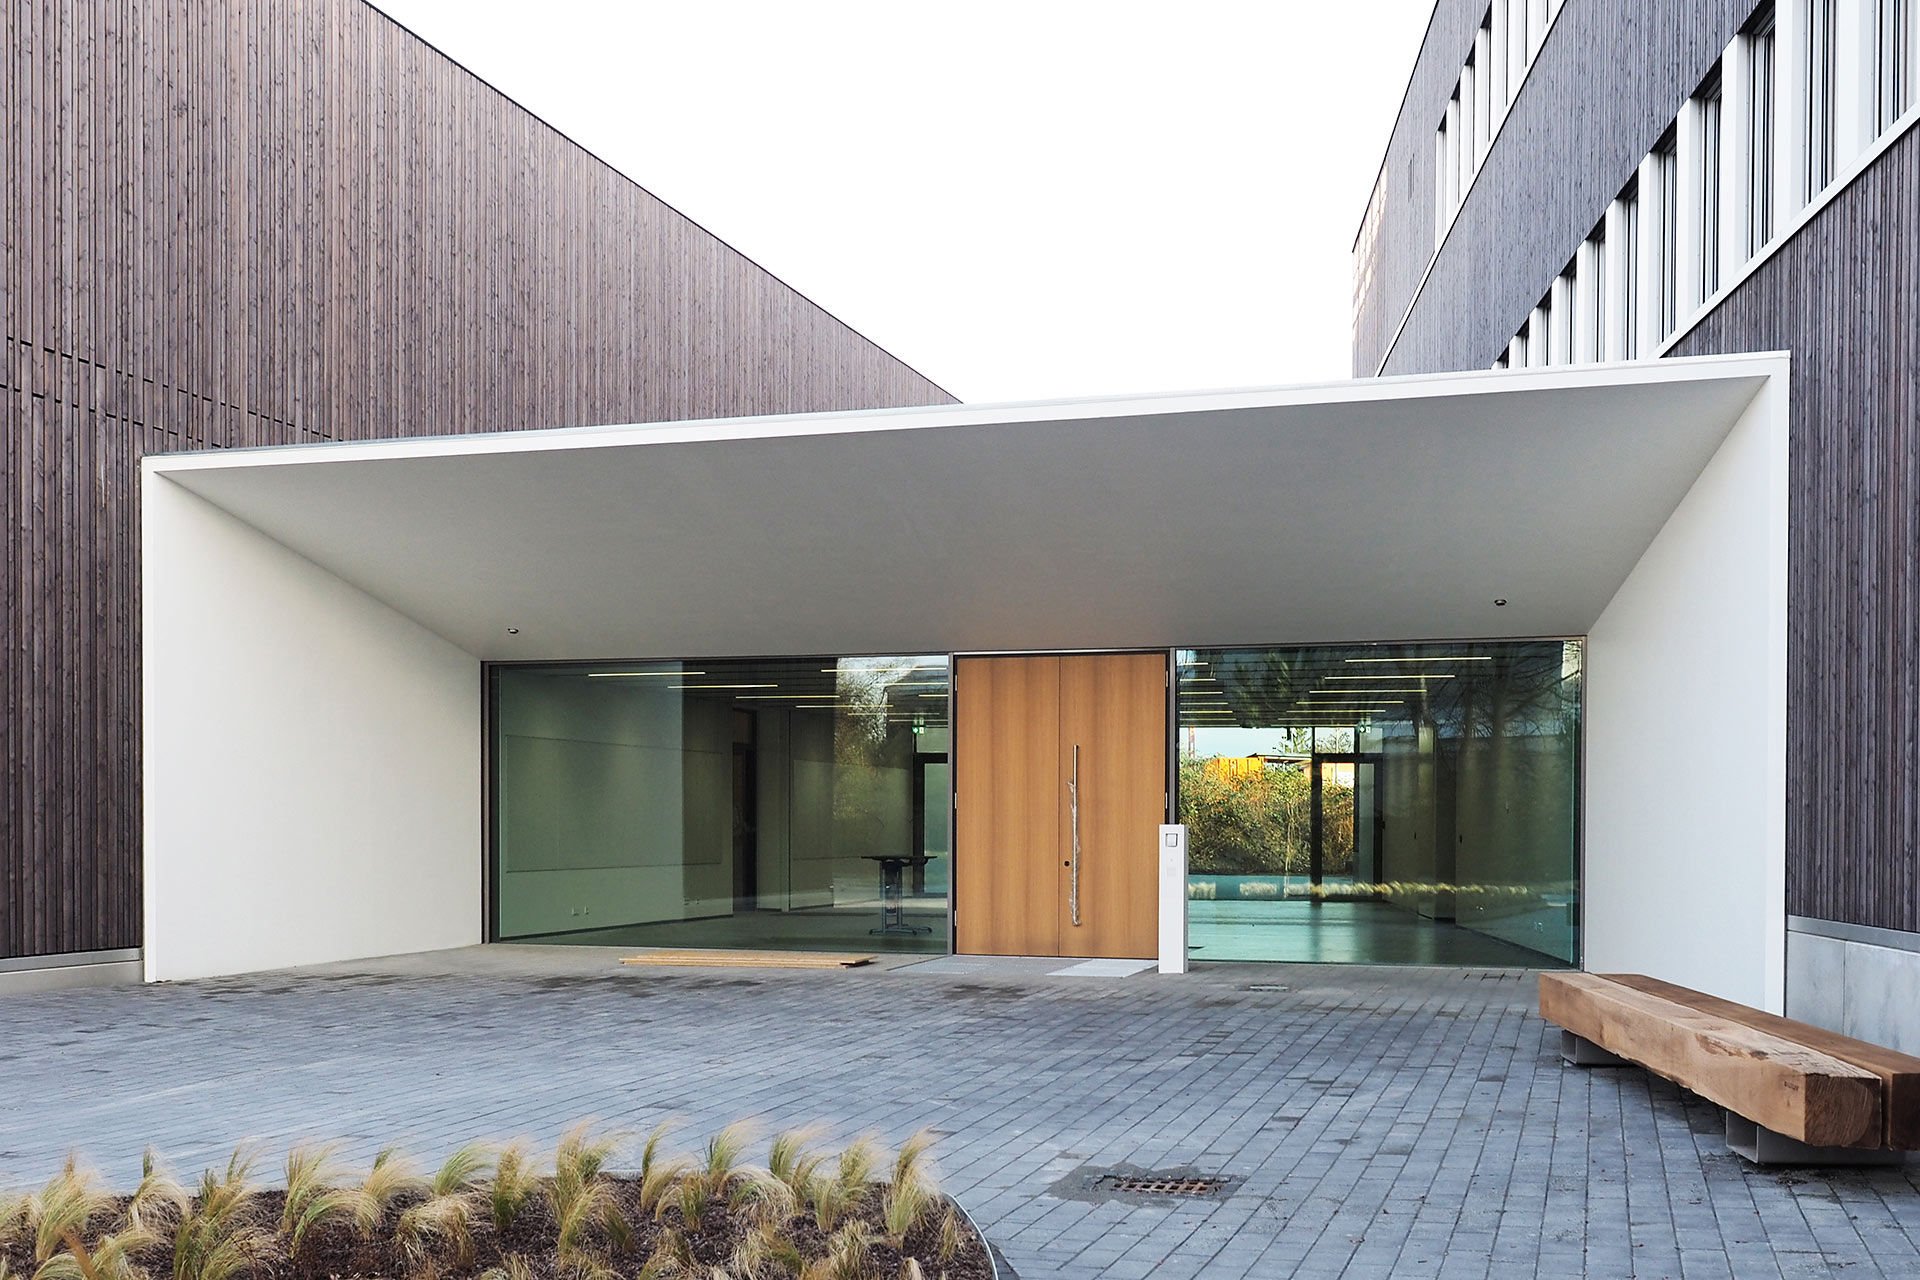 Neubau Zentrum für leichte und umweltgerechte Bauten, Zeluba, Braunschweig, Foyer / Haupteingang